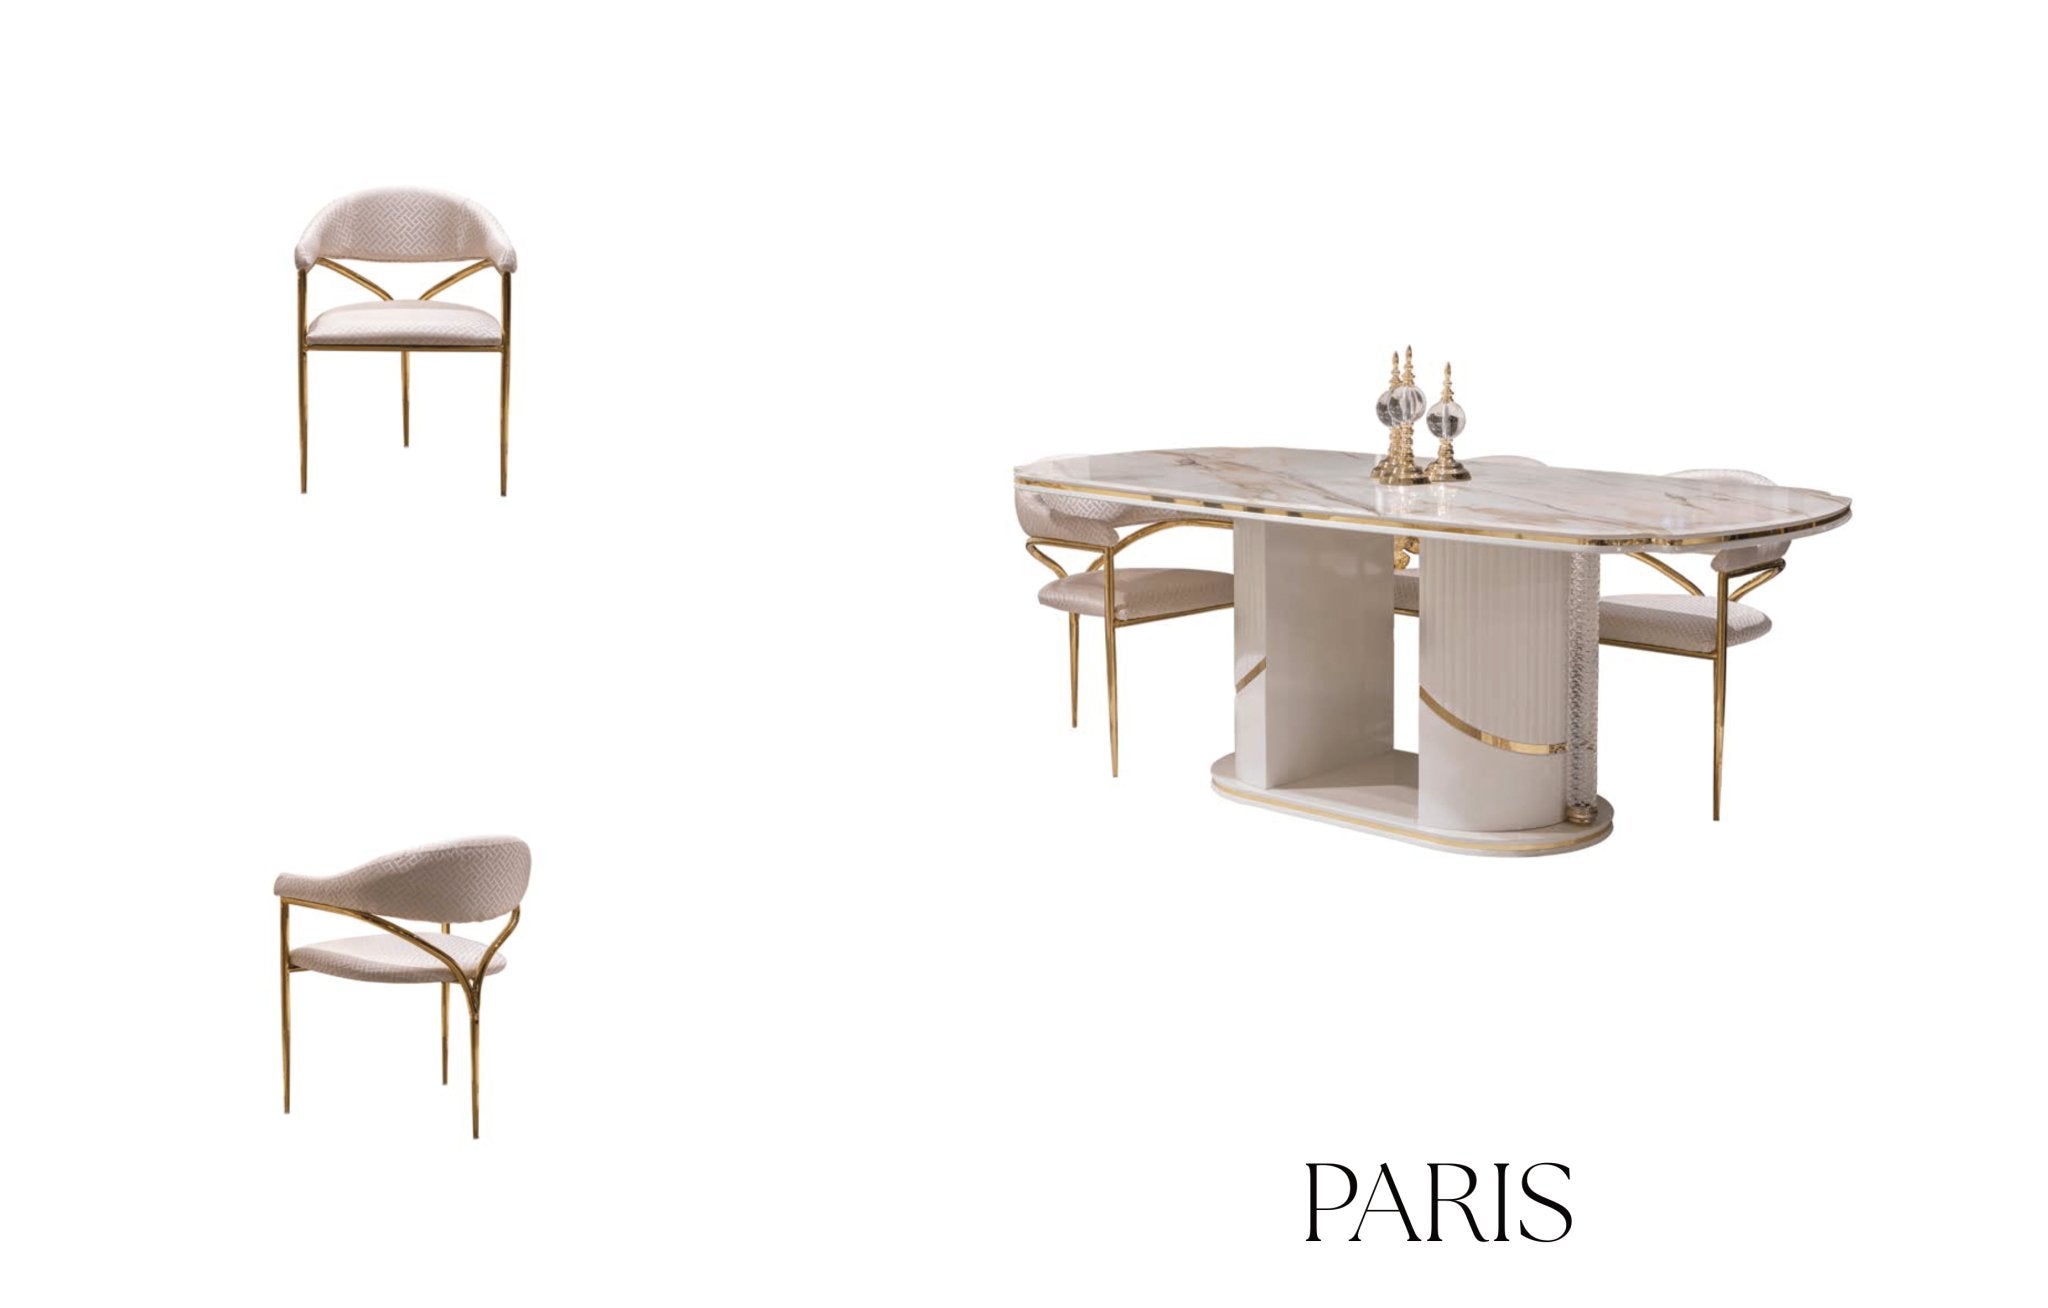 PARIS Dining Table - Berre Furniture